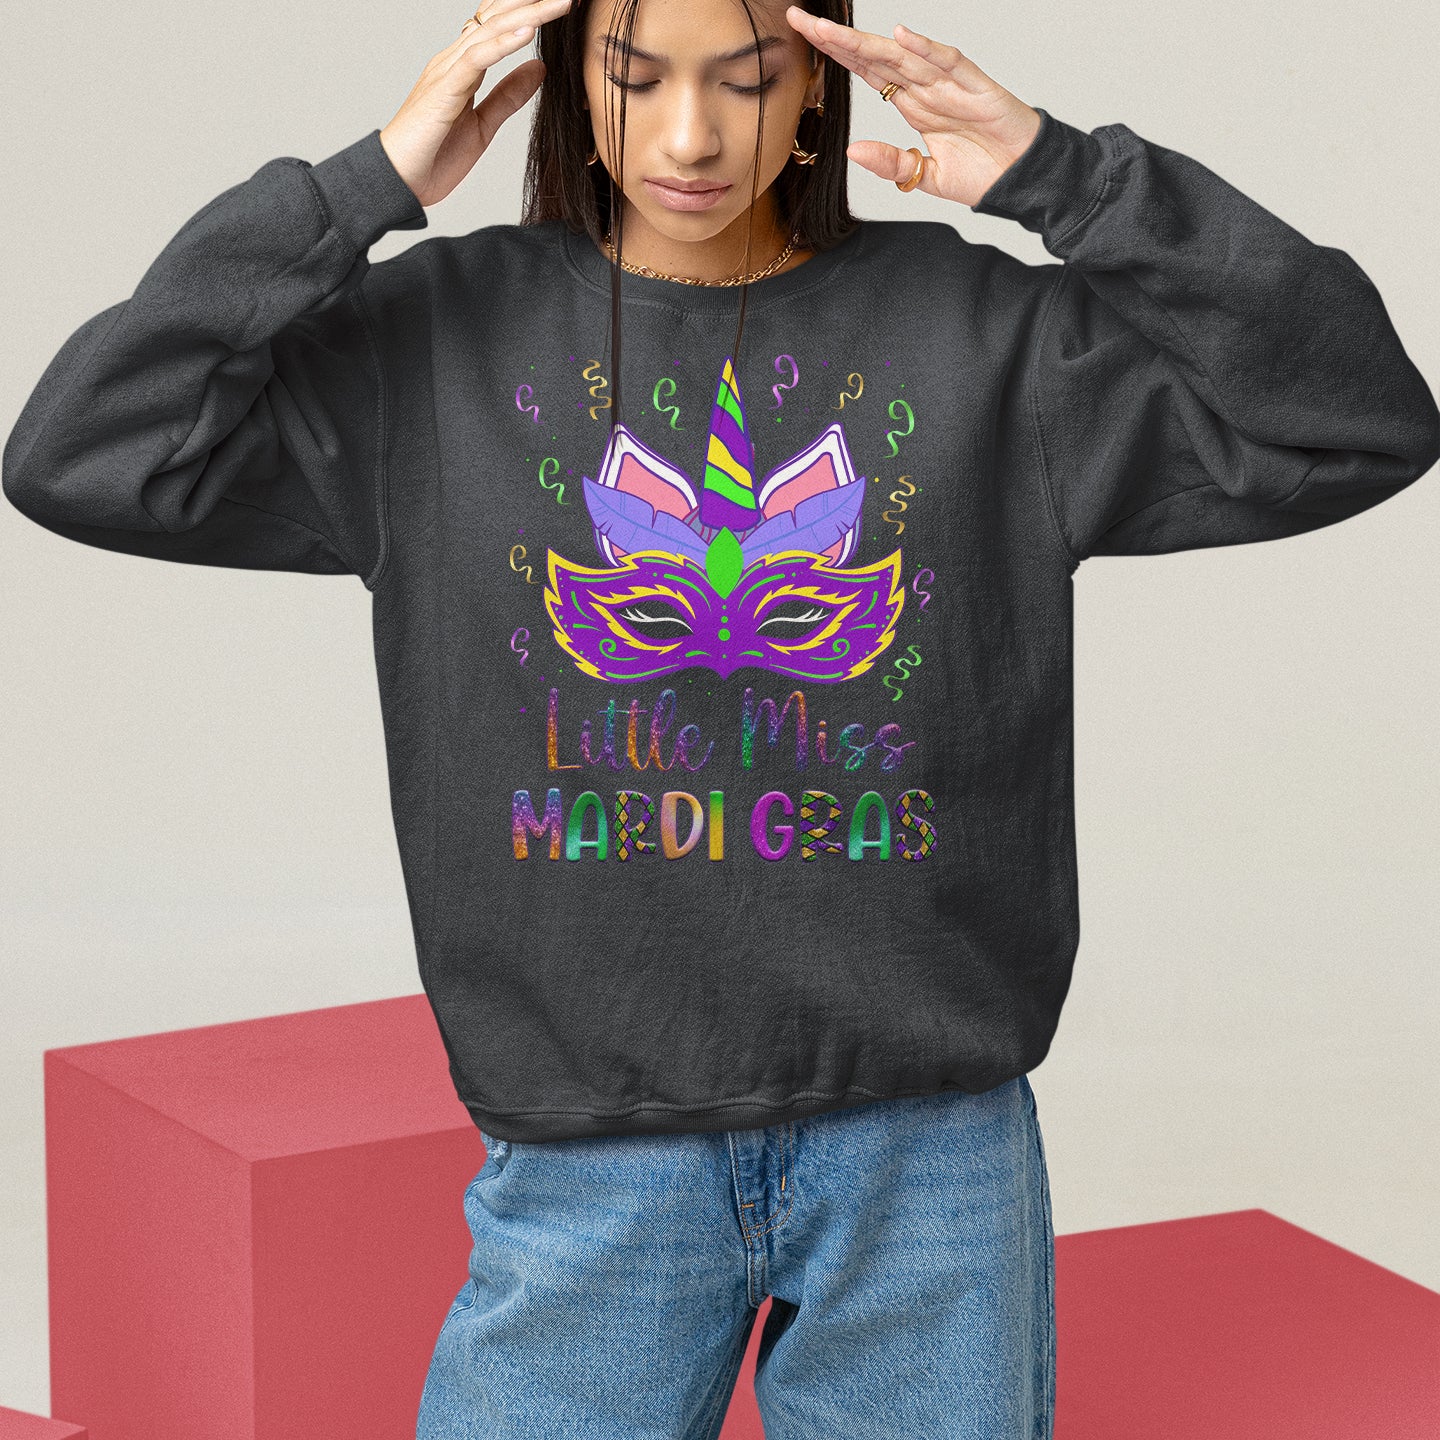 Mardi Gras Sweatshirt Little Miss Unicorn Cute Girl Women TS09